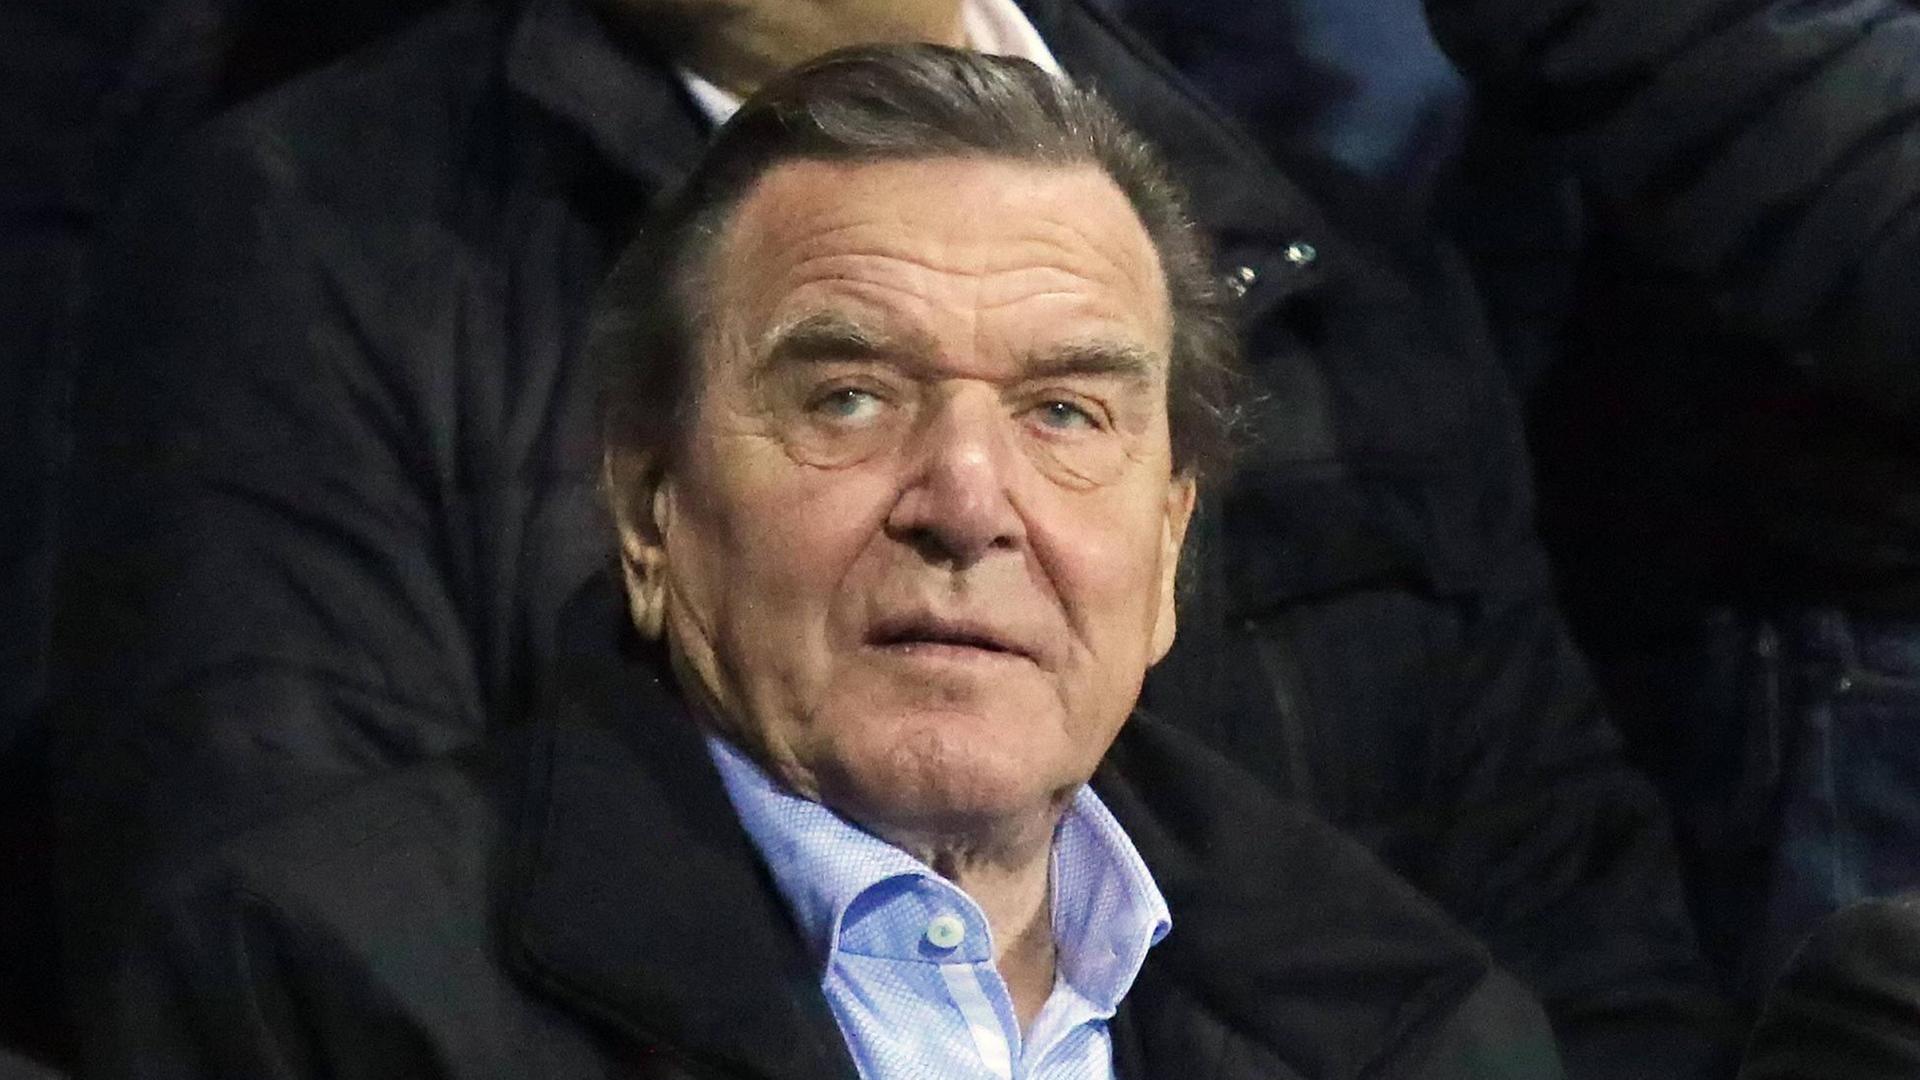 Altkanzler Gerhard Schröder blickt nachdenklich